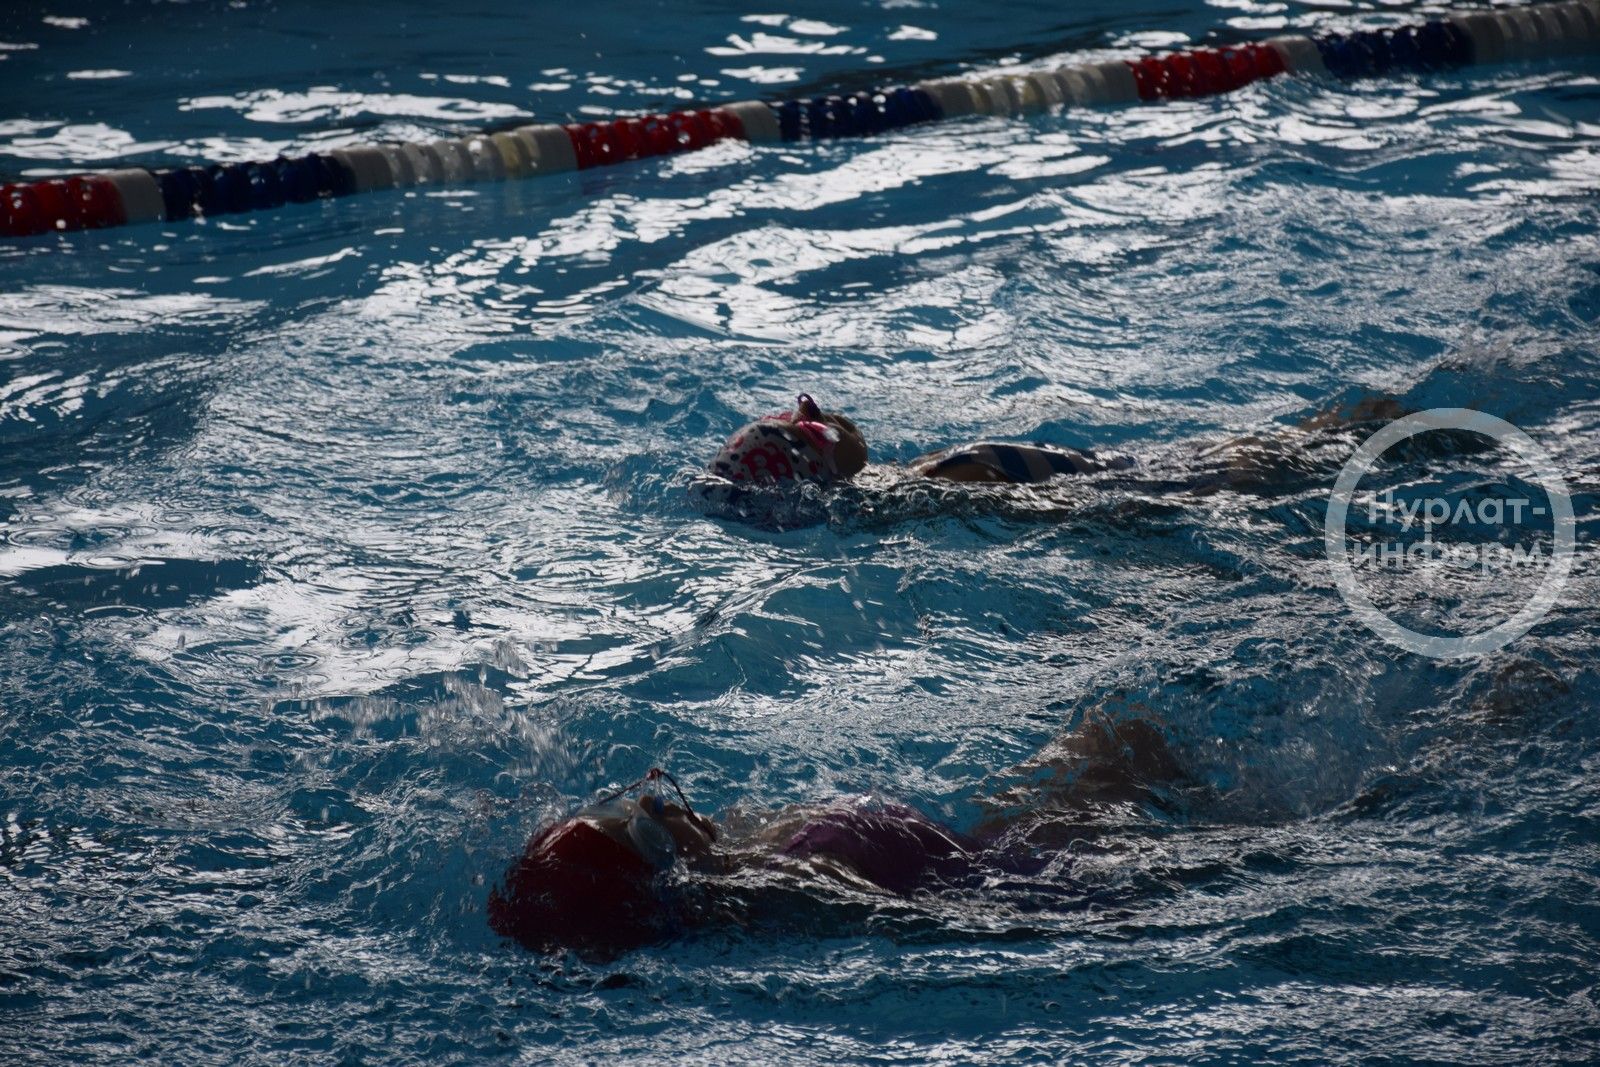 В Нурлате прошло Первенство района по плаванию в рамках партийного проекта «Спорт без границ»